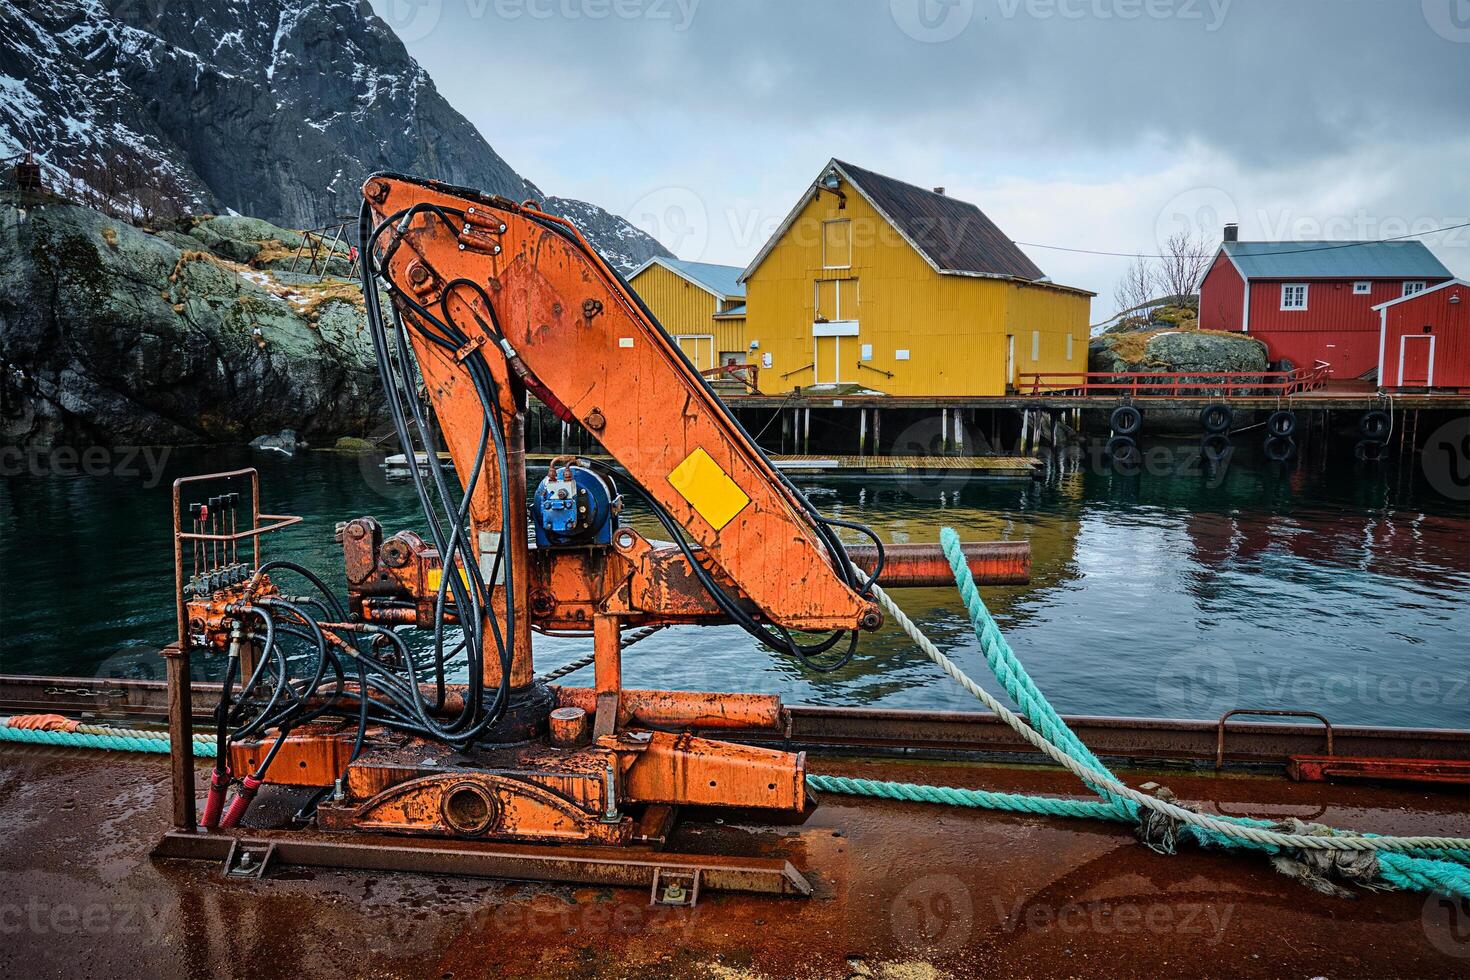 Nusfjord pescaria Vila dentro Noruega foto